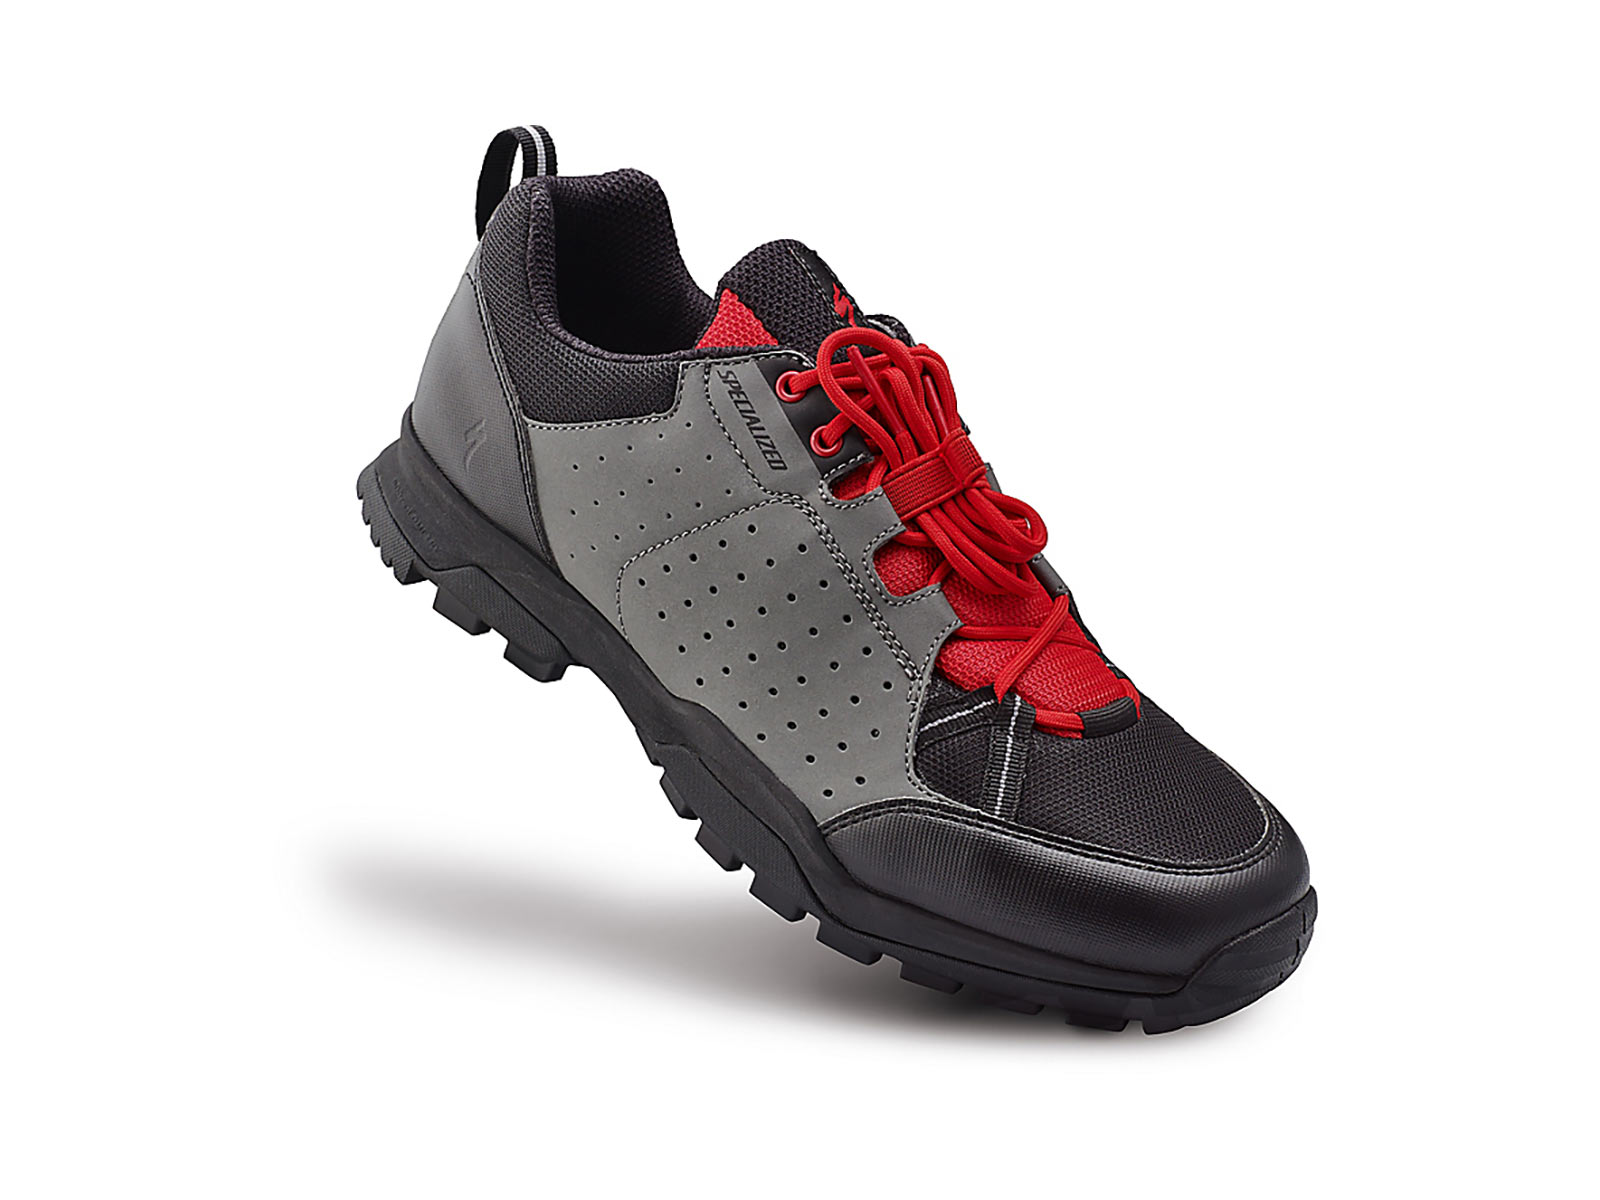 Παπούτσια Specialized Tahoe Shoes - Black/Red (48)